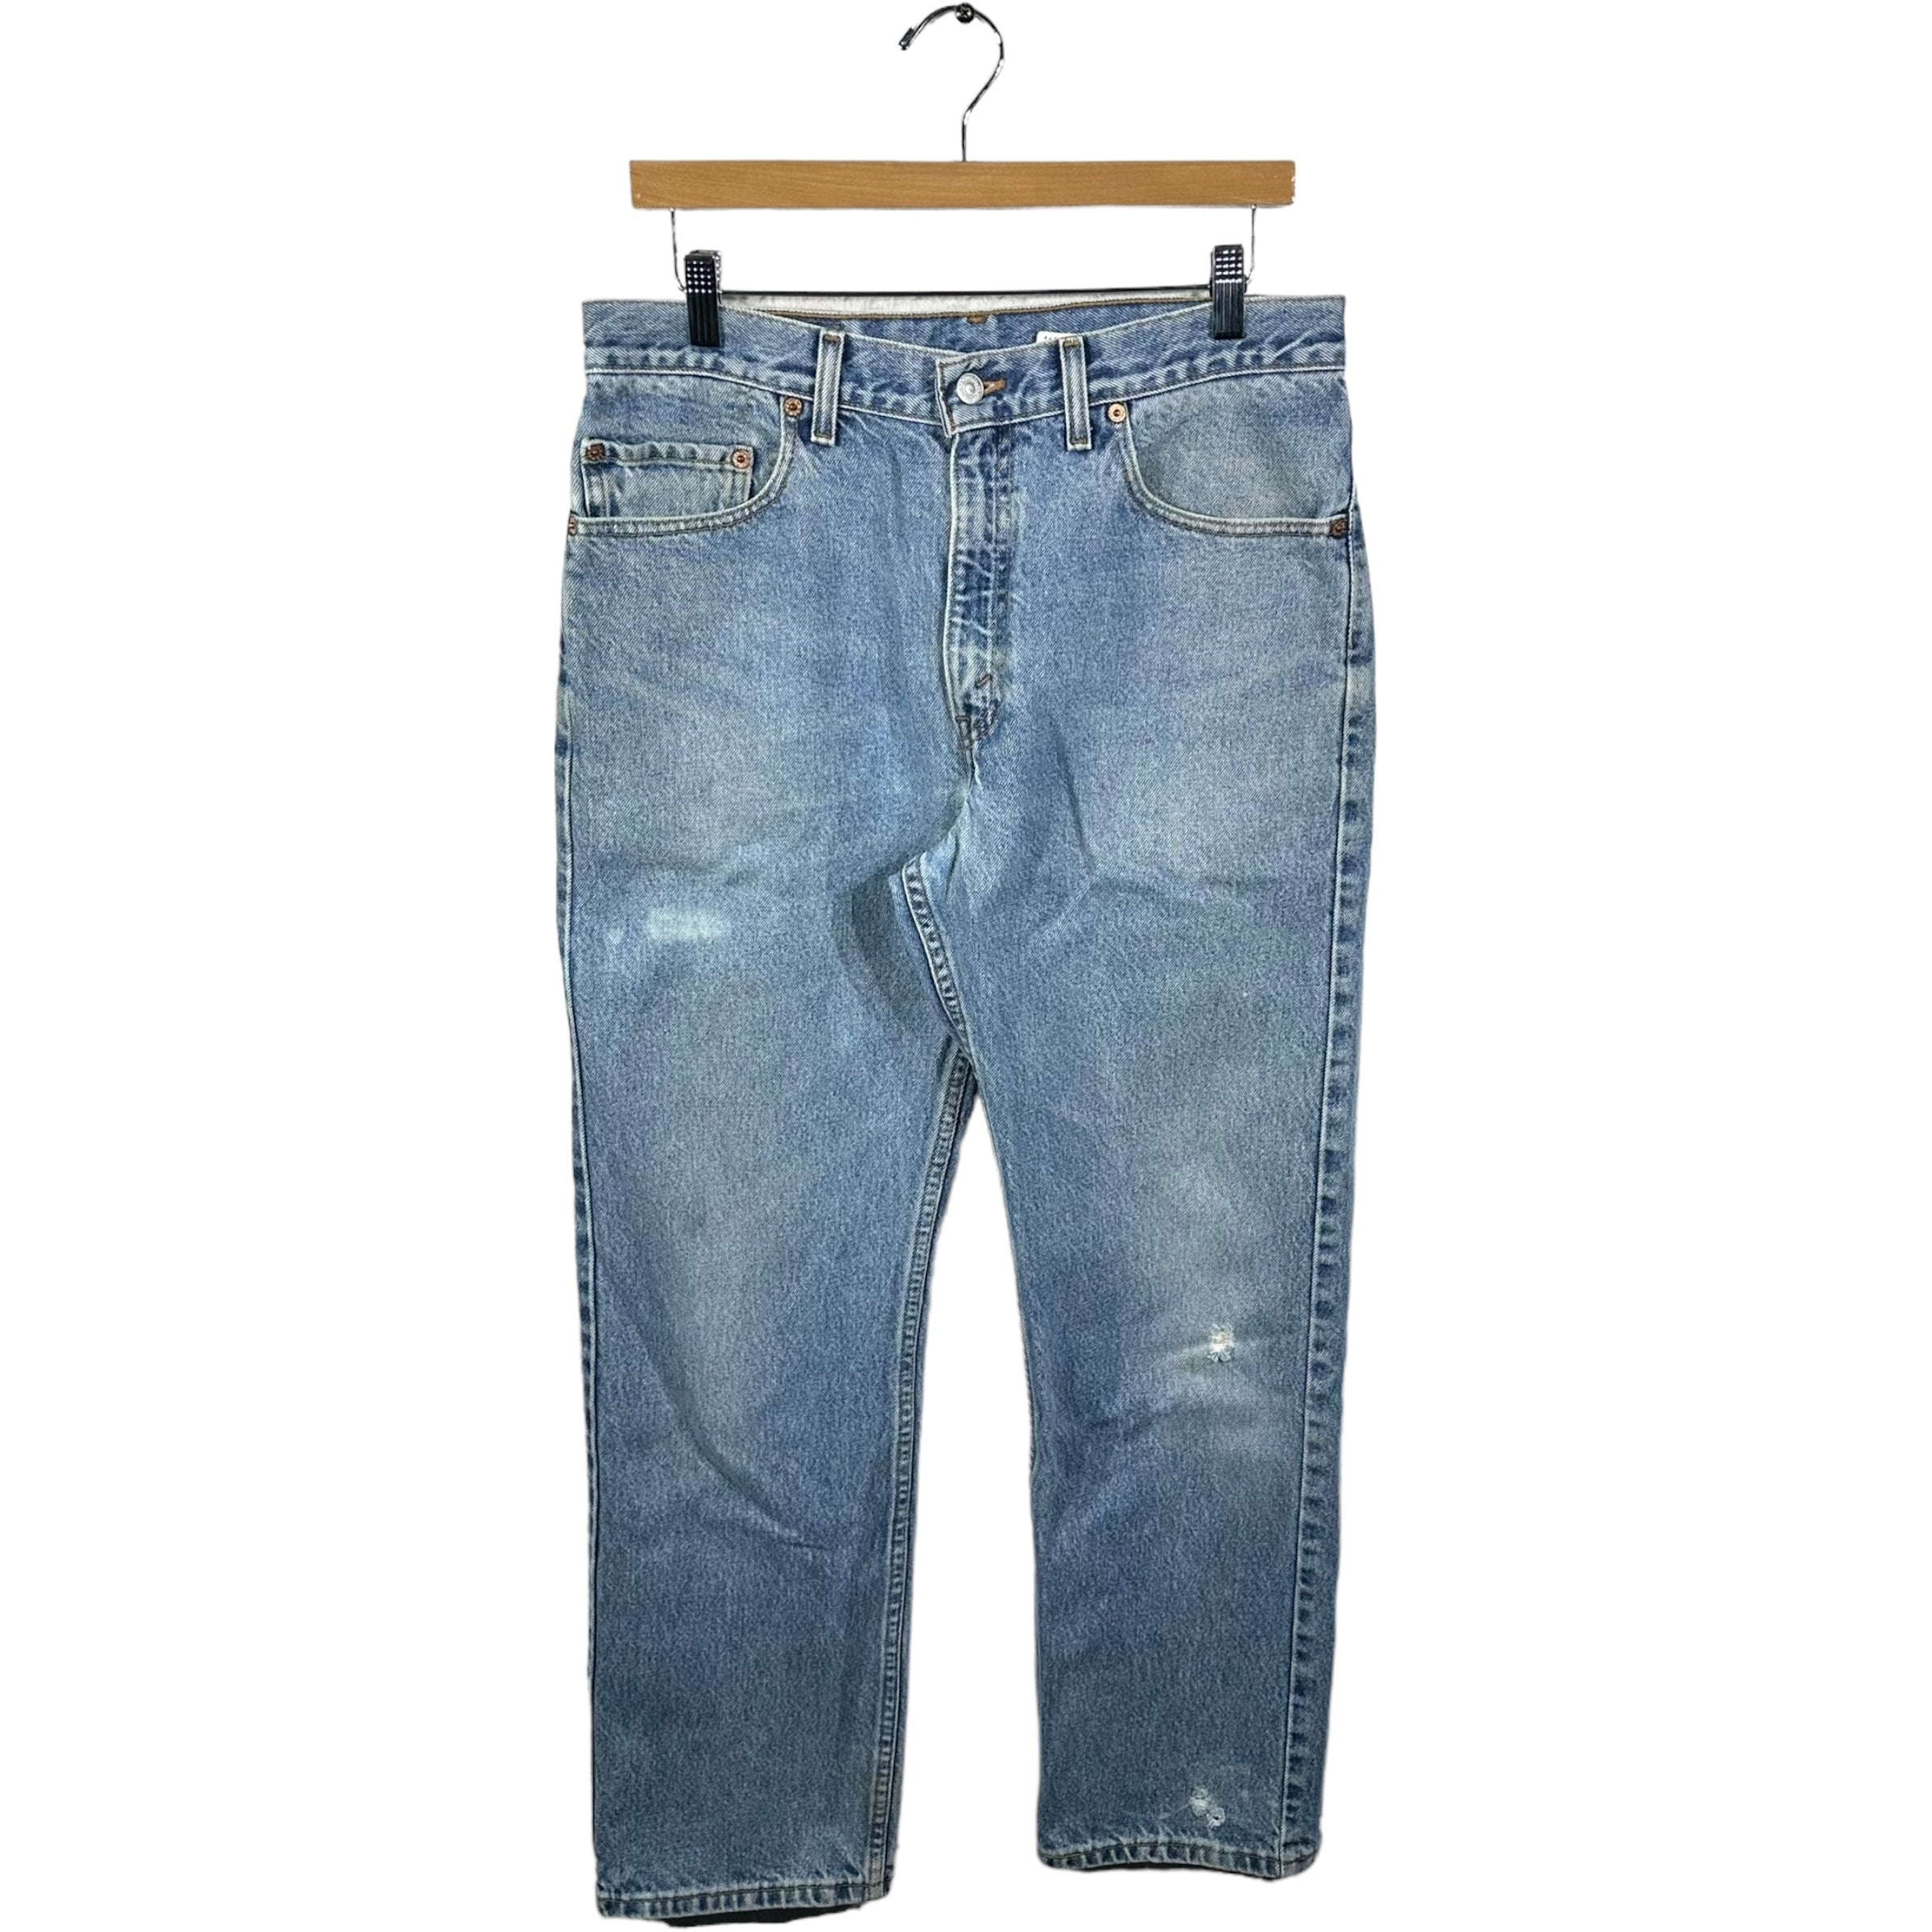 Vintage Levis 505 Denim Jeans